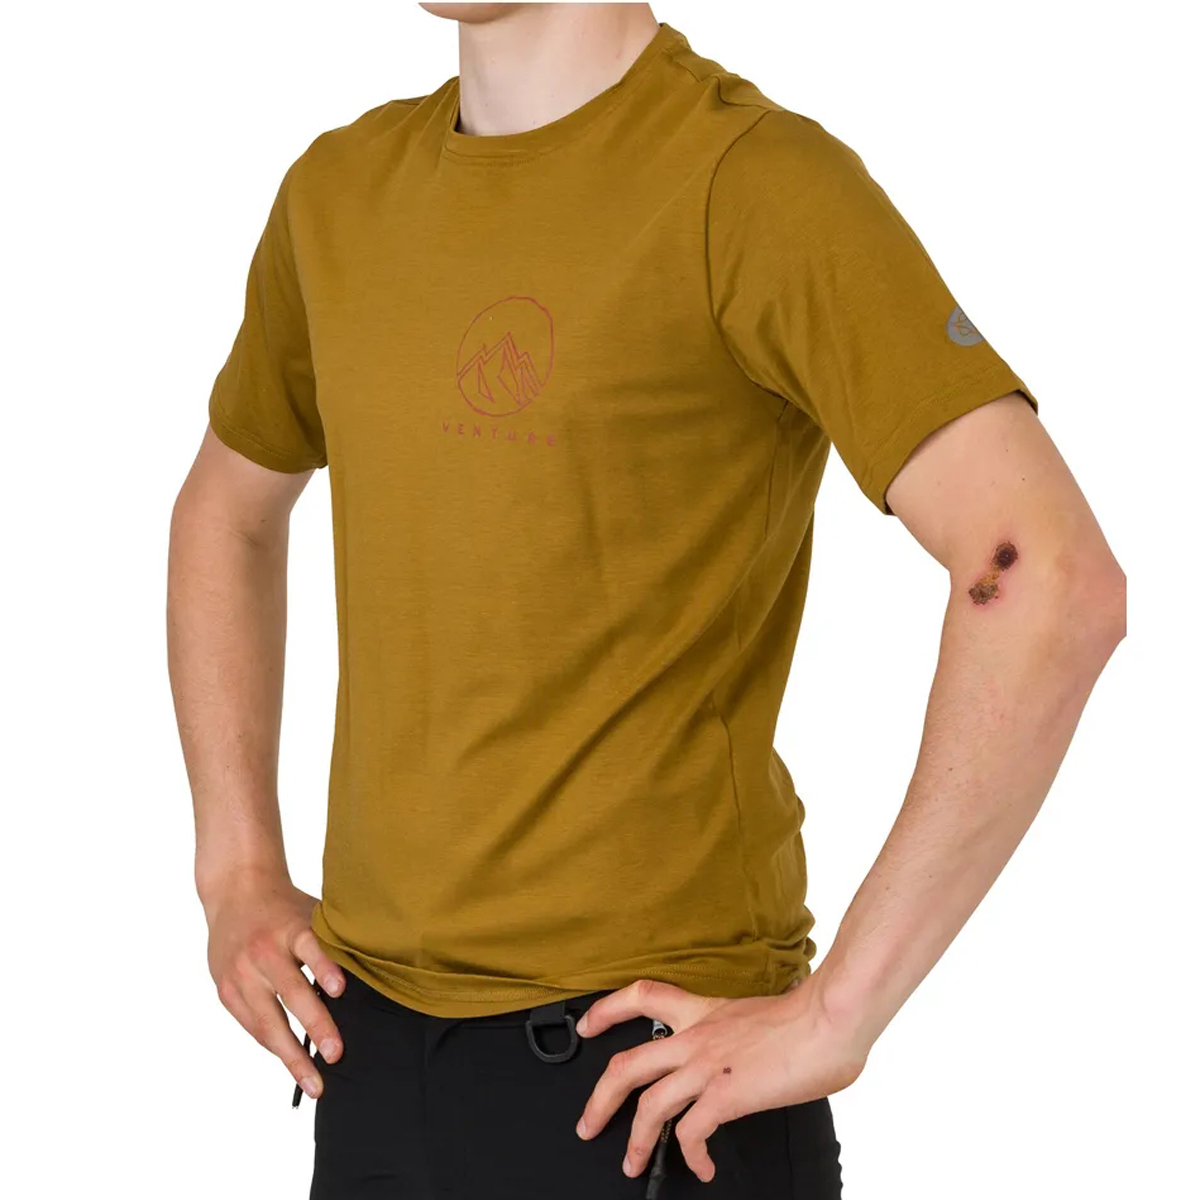 Produktbild von AGU Venture Casual Performer T-Shirt Unisex - armagnac